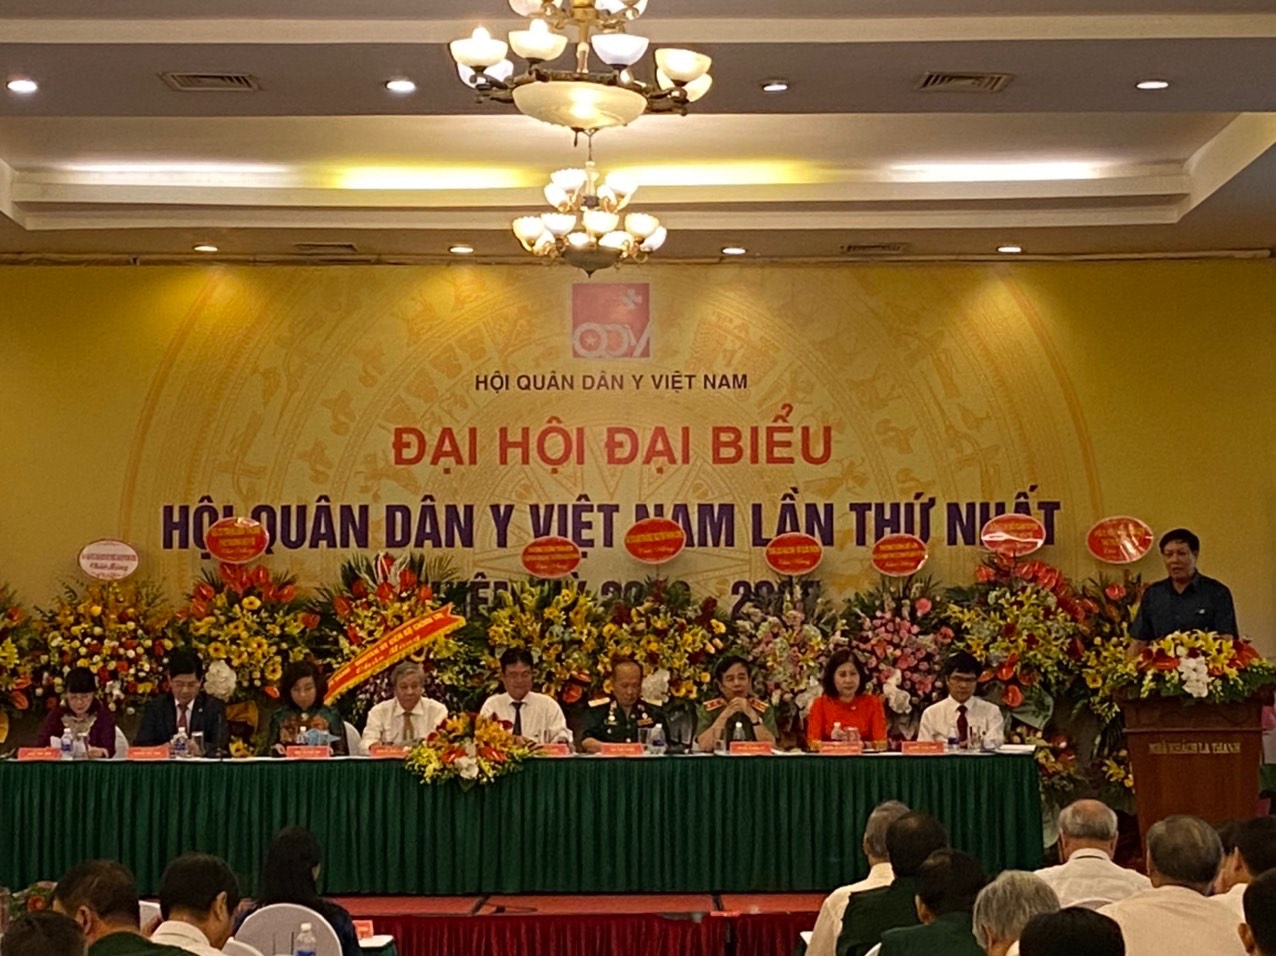 Đại hội đại biểu Hội Quân dân y Việt Nam lần thứ nhất